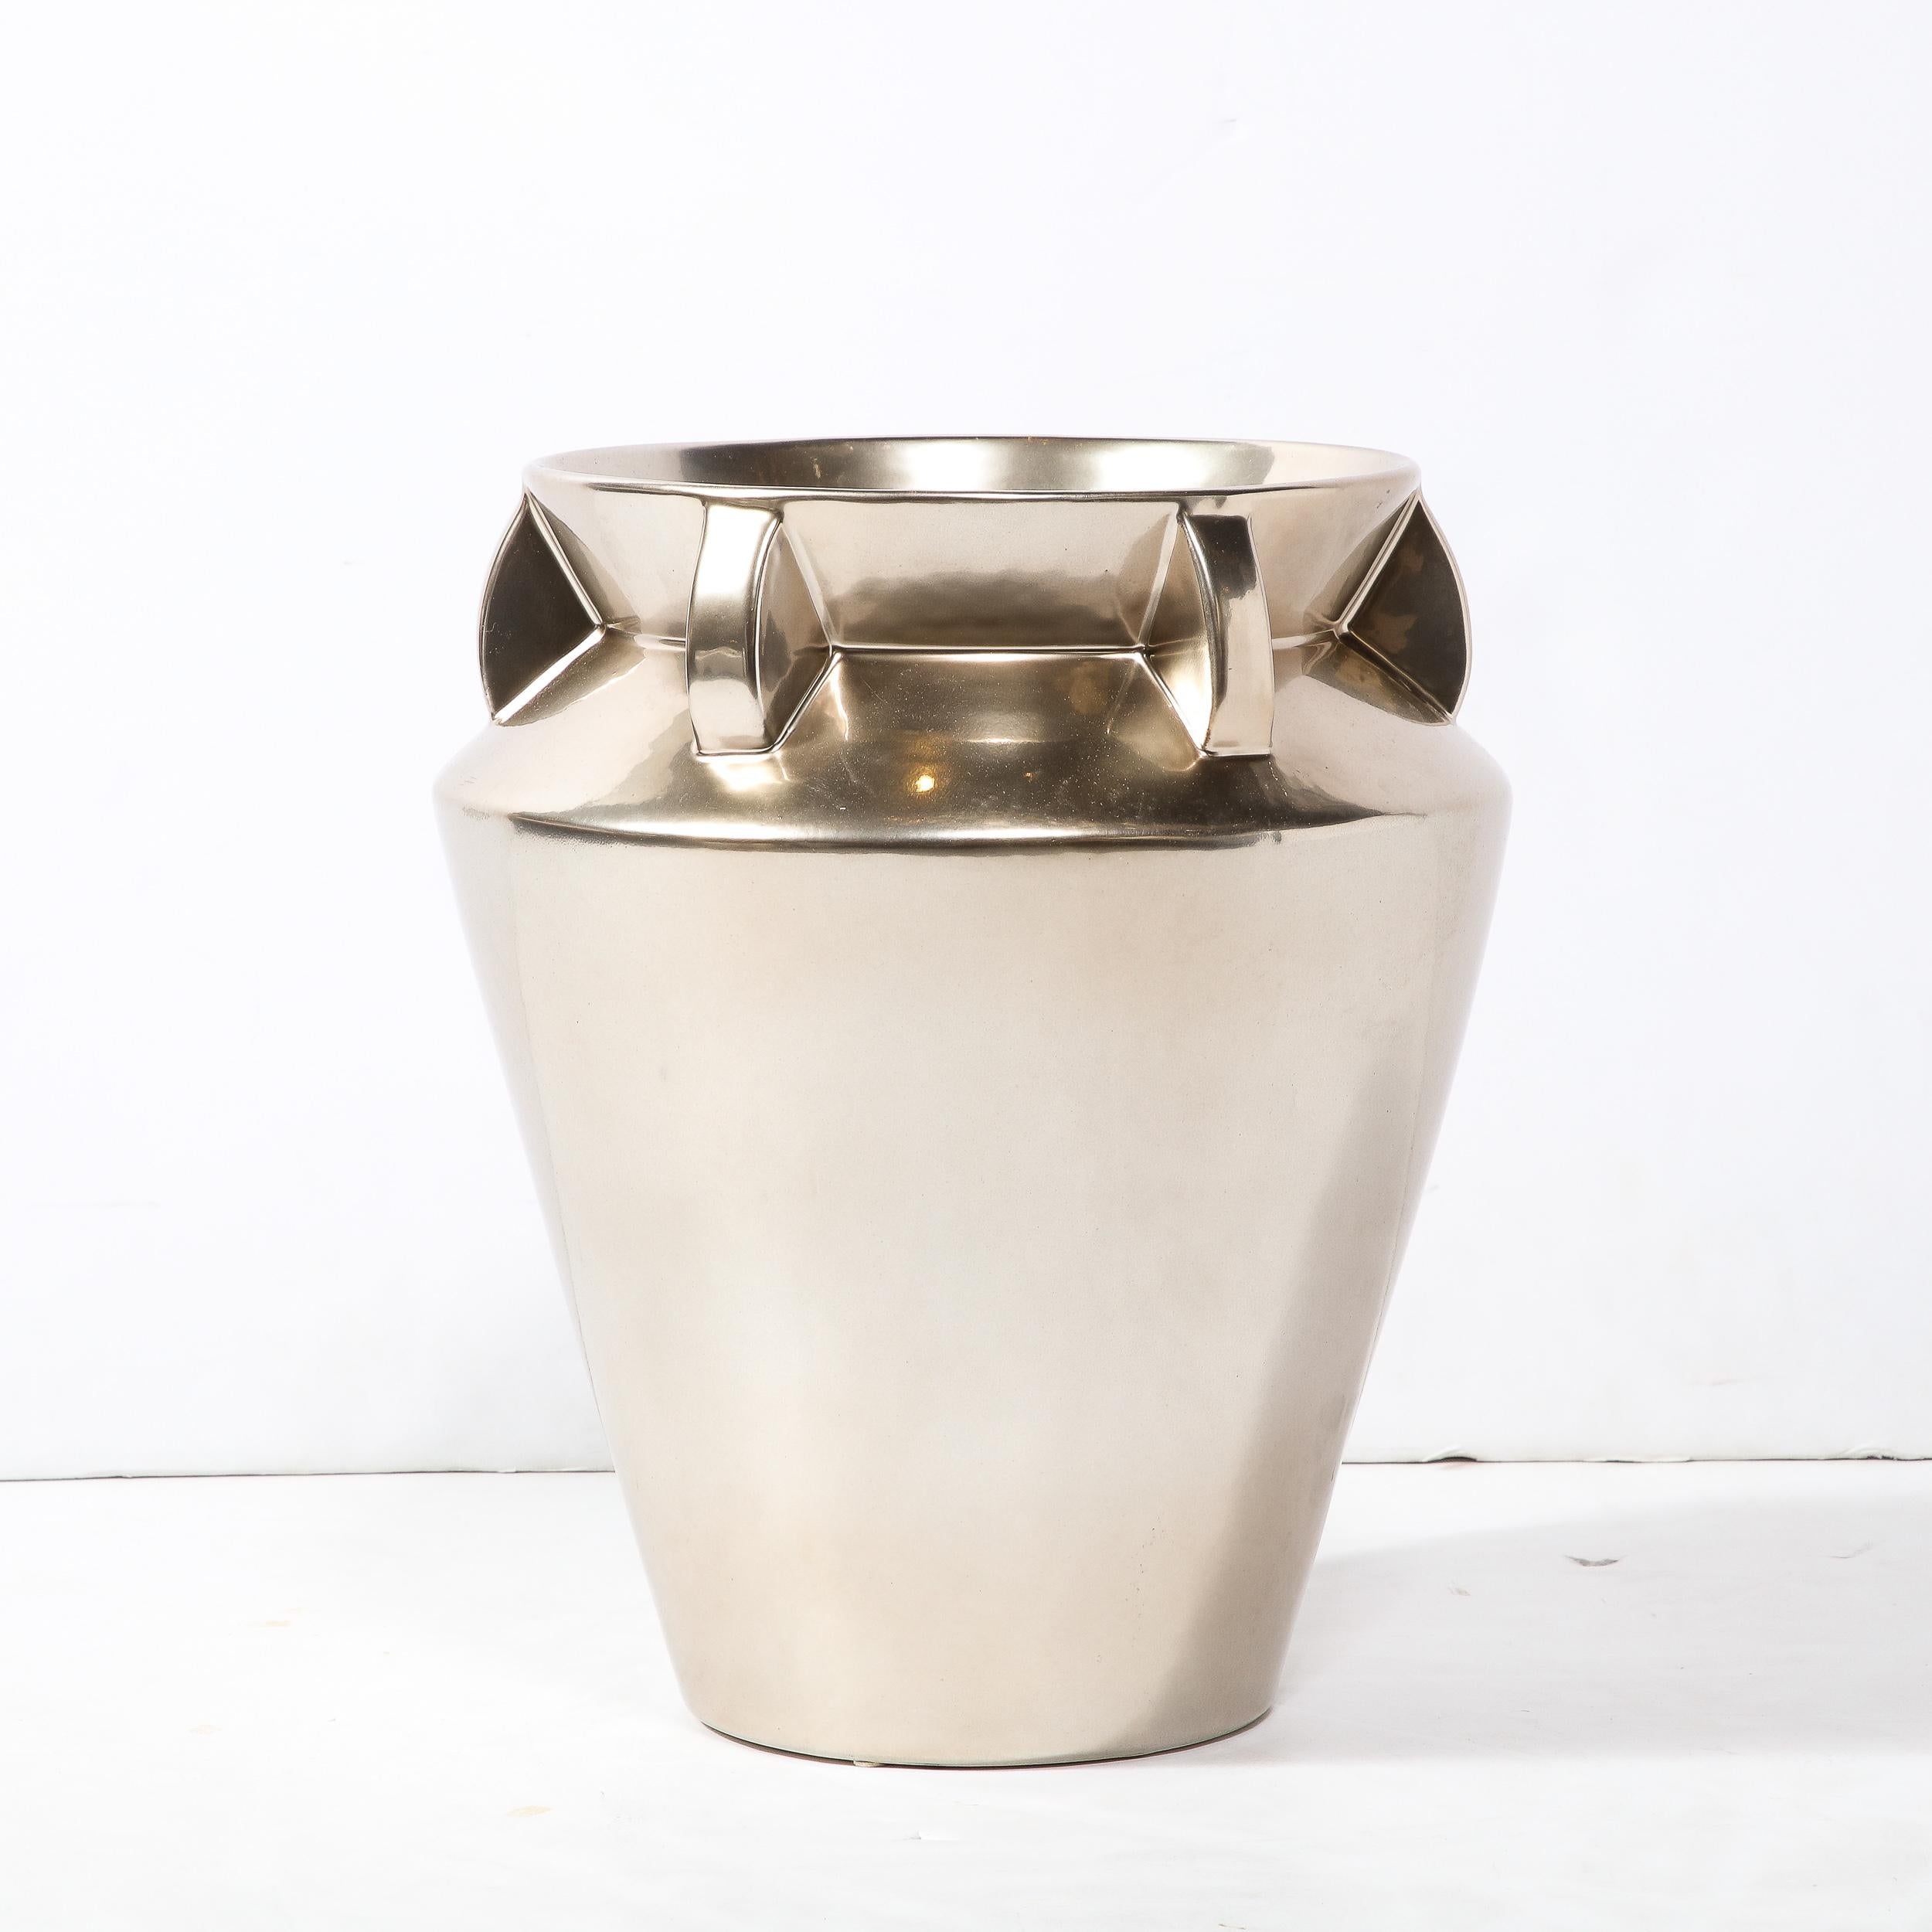 American Modernist Urn Form Ceramic Vase with Streamlined Detailing and Platinum Glaze For Sale